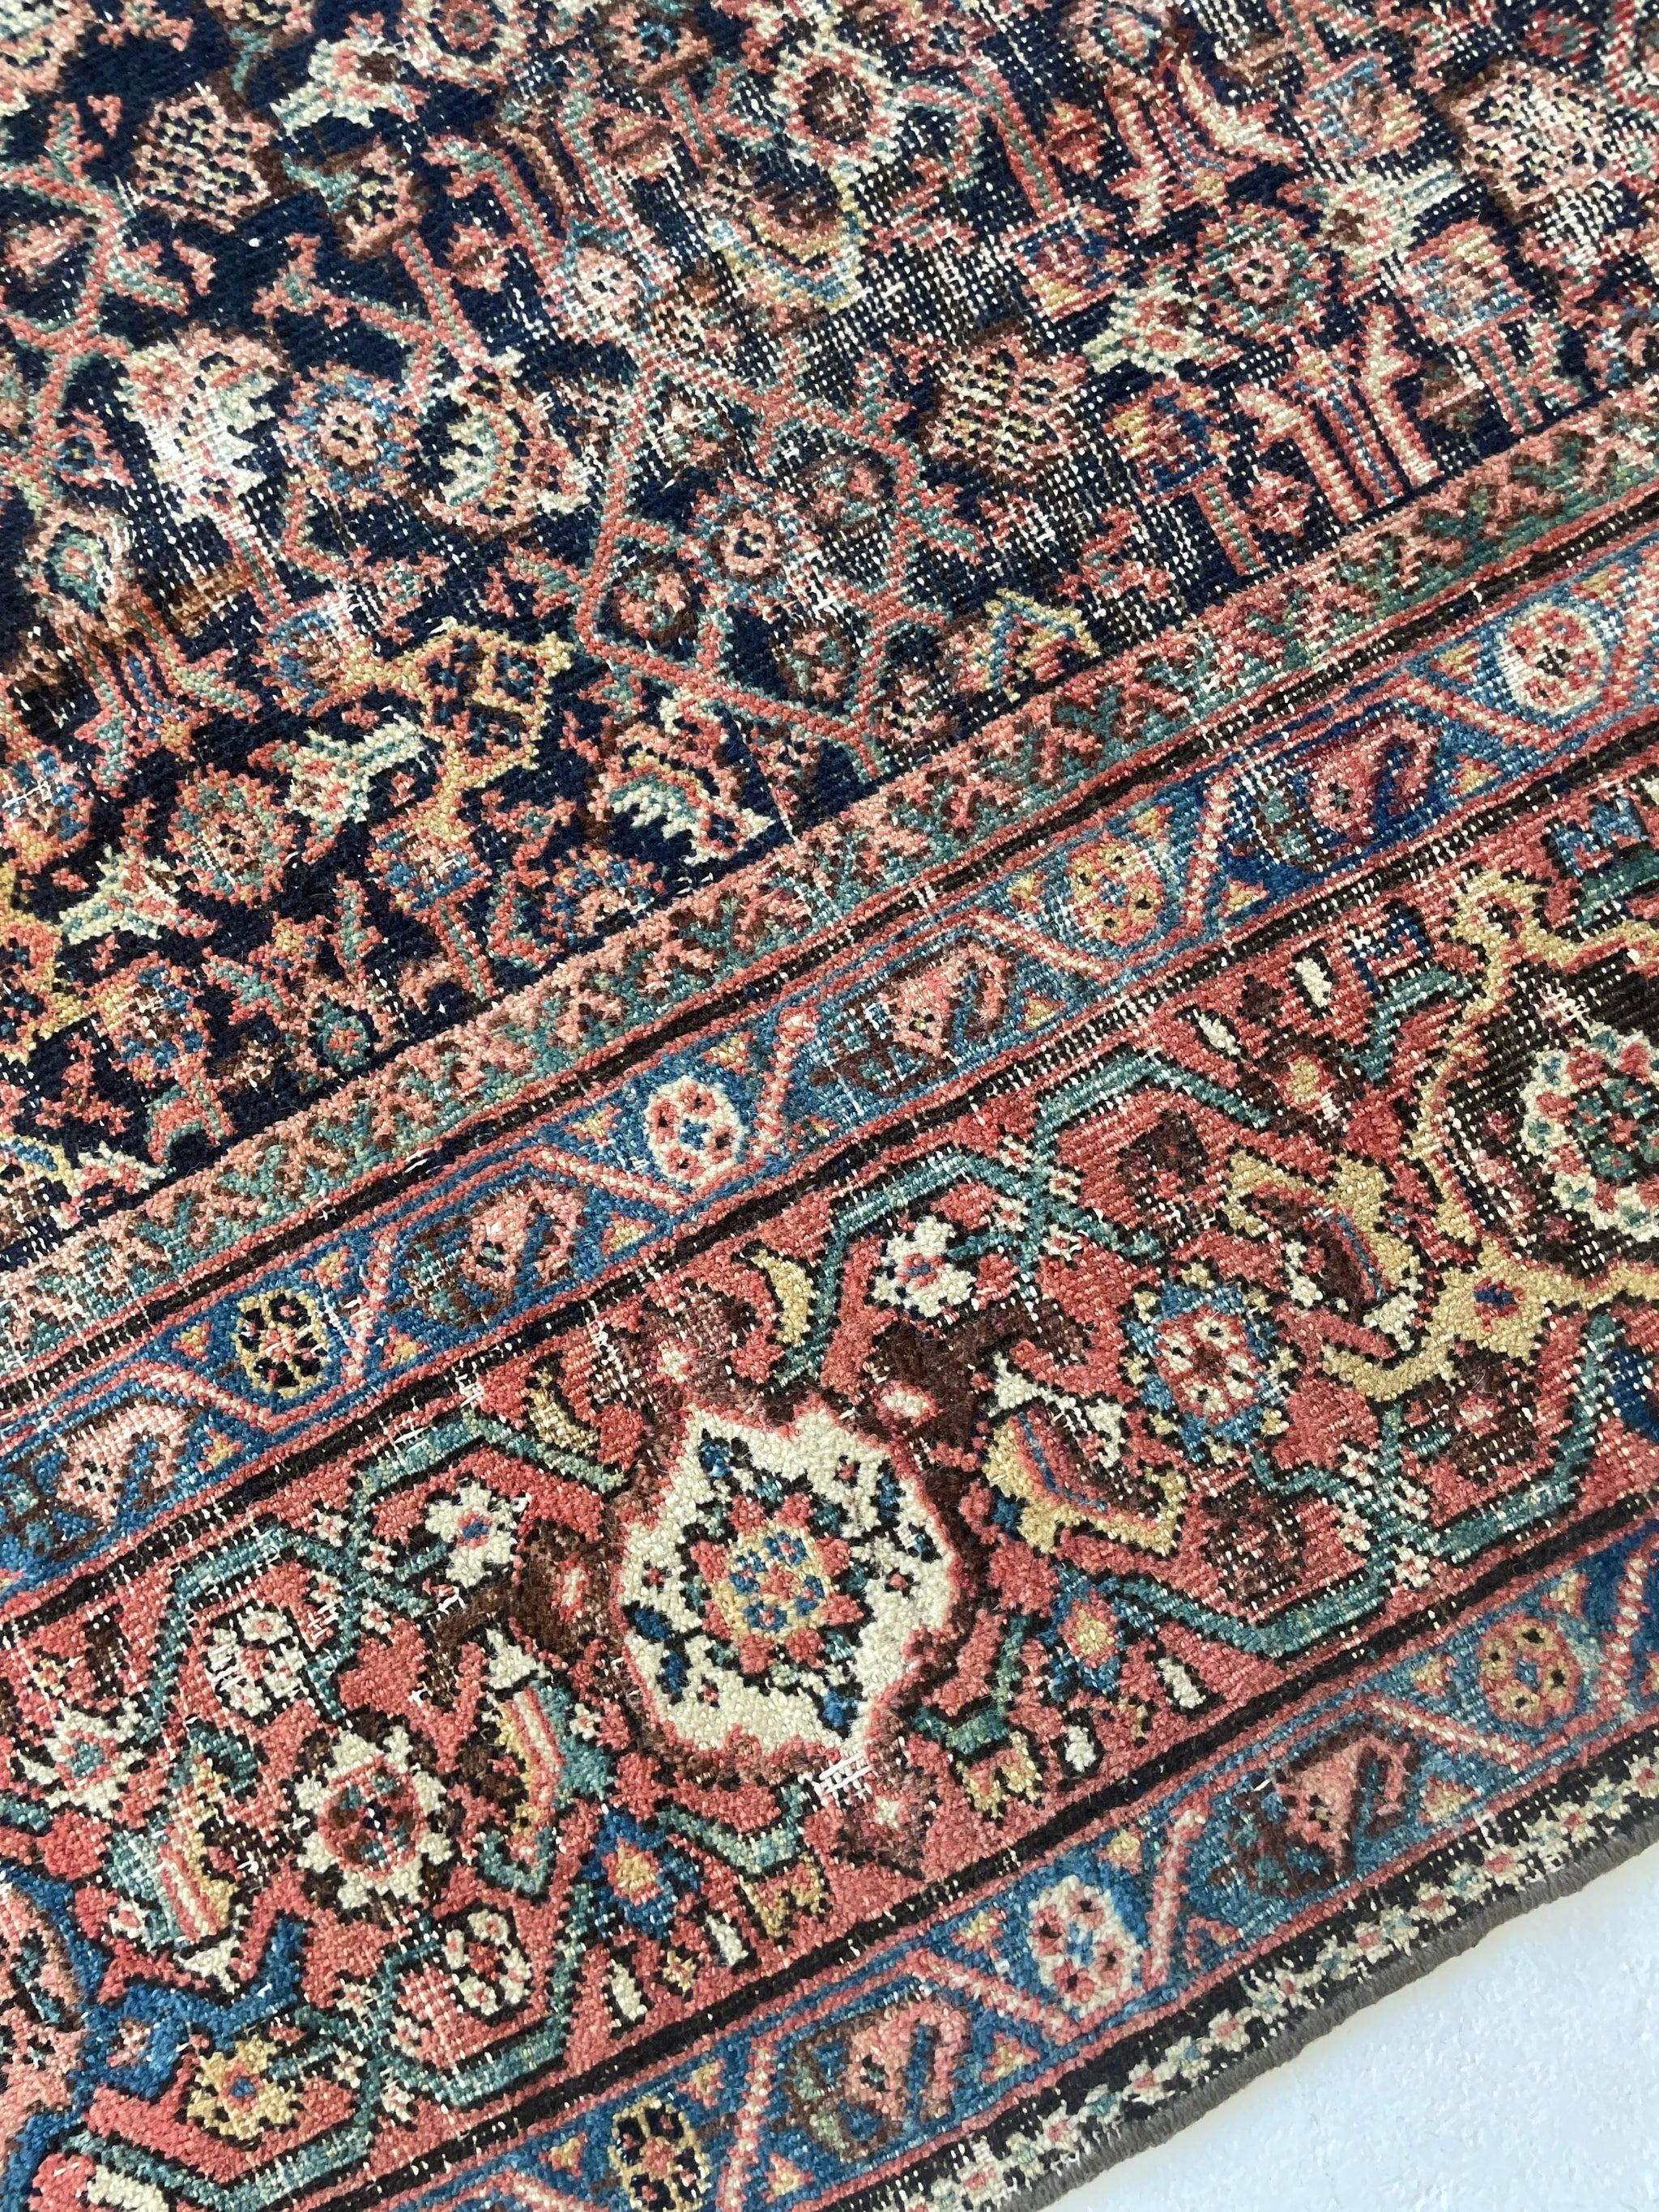 Antique Persian Carpet Rug in Deep Old-World Indigo, circa 1900-1915's For Sale 11